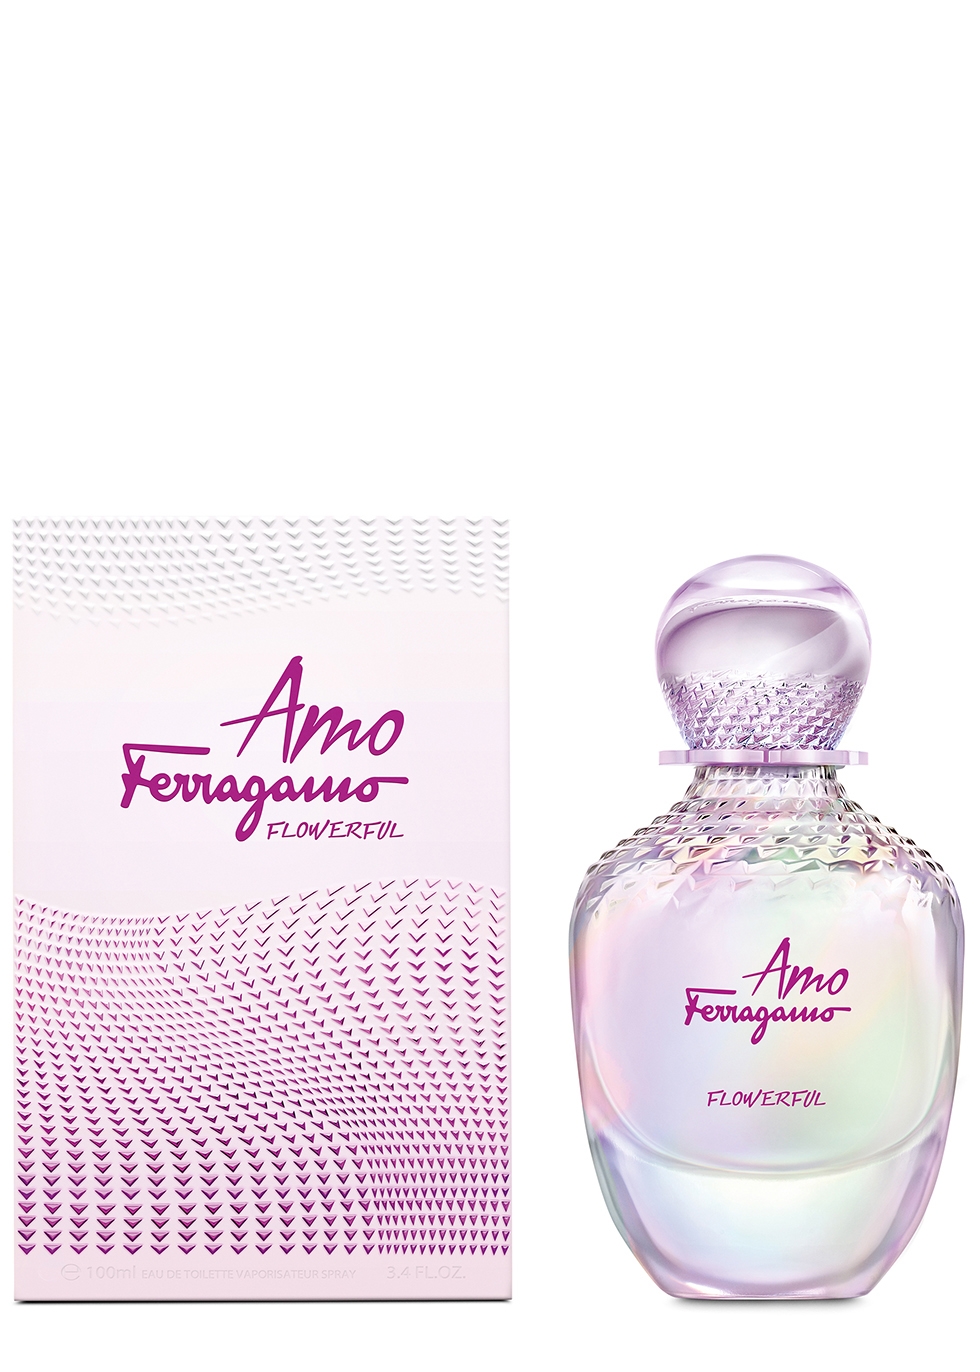 Extranjero Todo el tiempo pausa Perfume Locion Amo Ferragamo Flowerful By Salvatore Ferragamo - Perfumeria  George Perfumes Originales